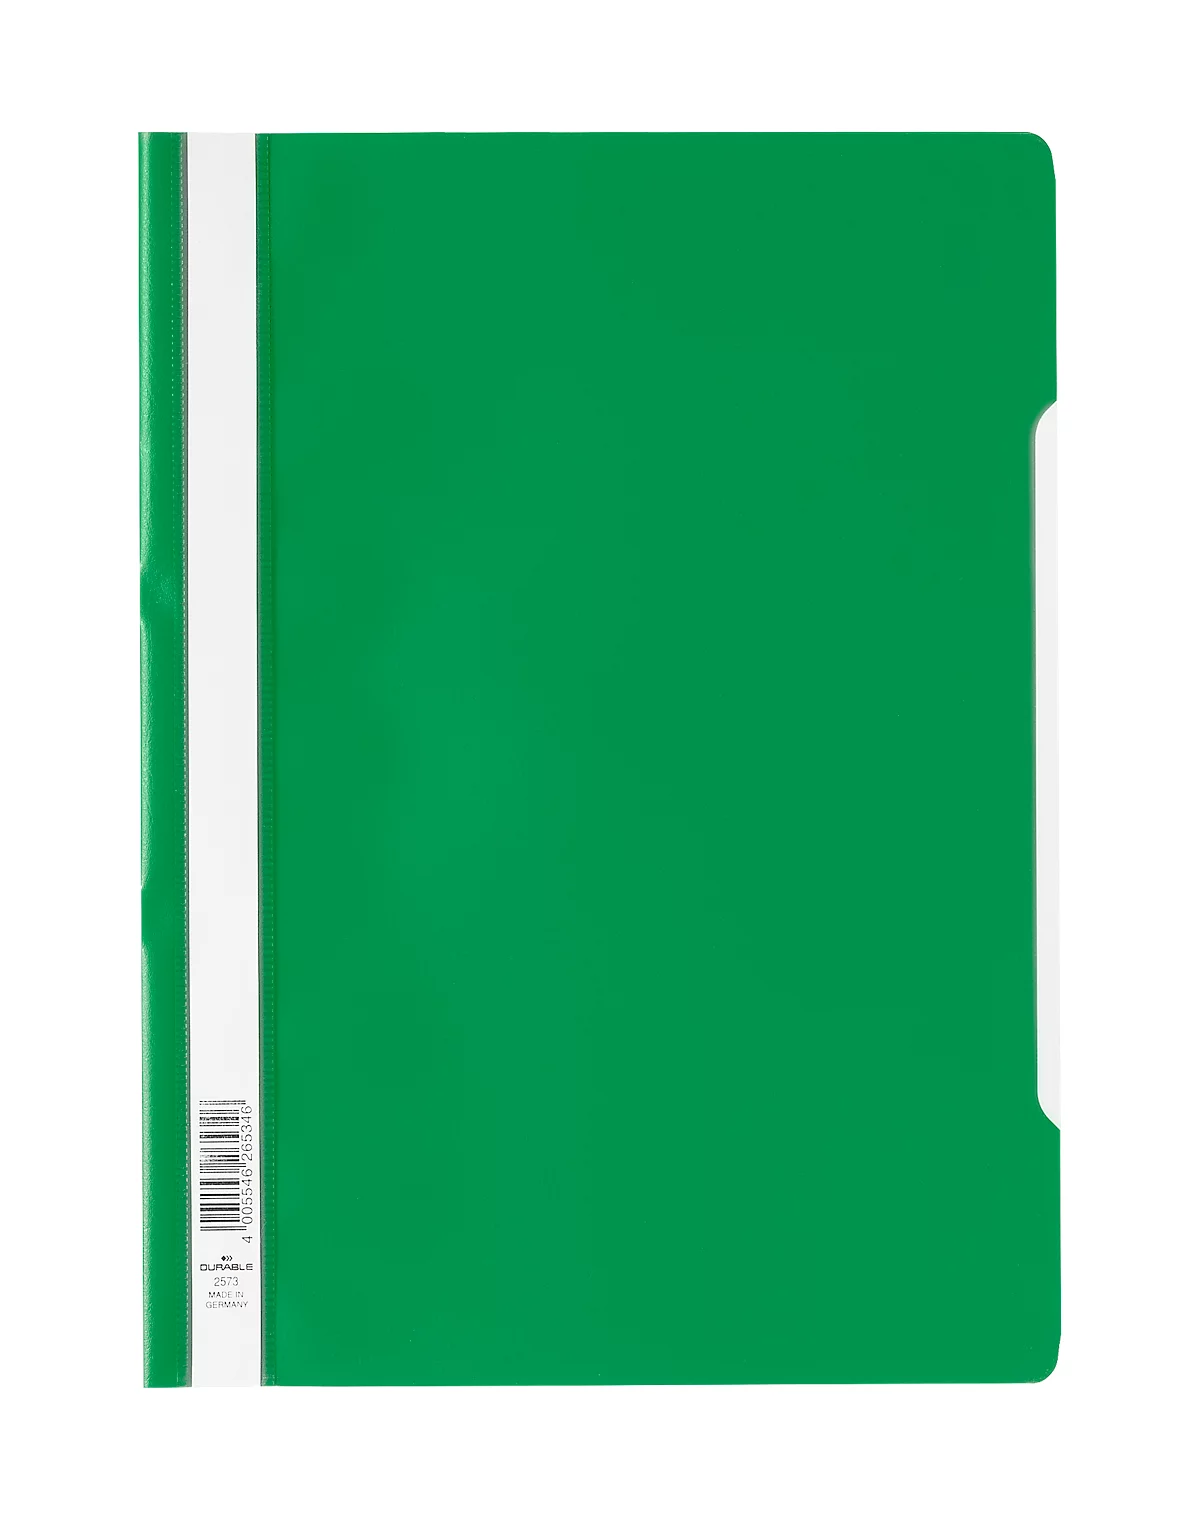 Chemise transparente avec barre de maintien DURABLE, format A4, polypropylène, 50 p., vert